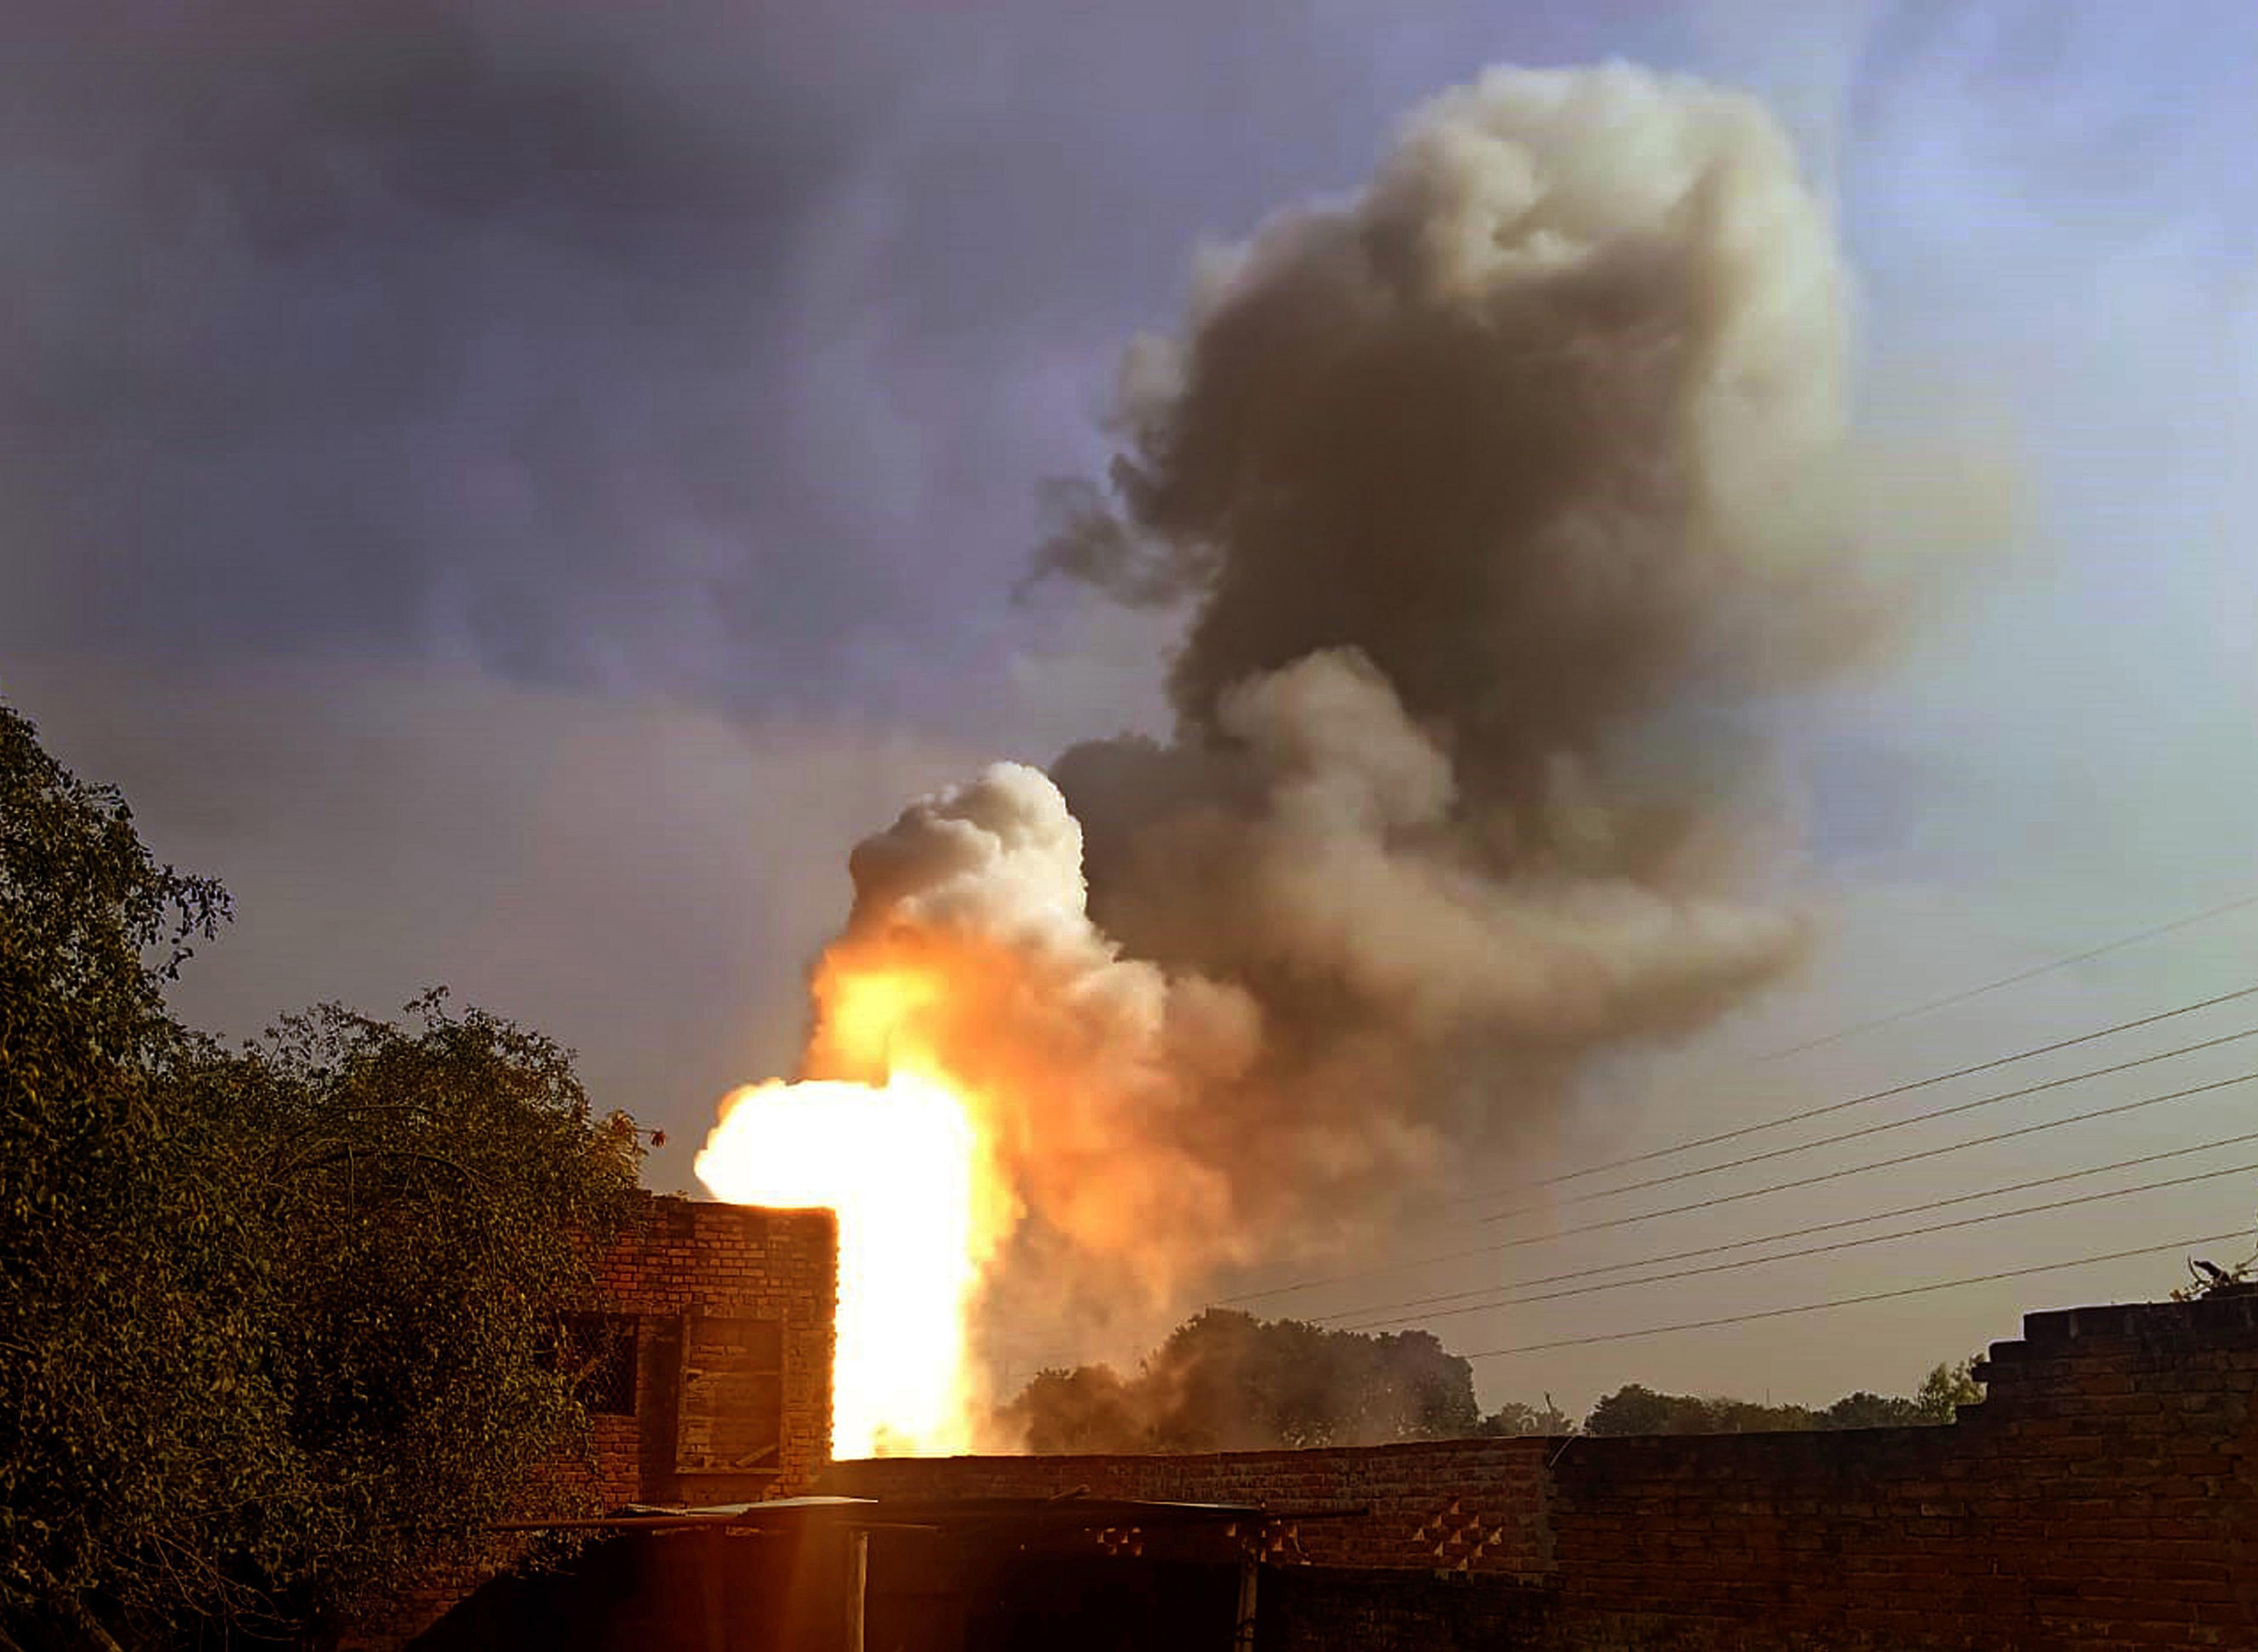 Explosion in Tamil Nadu : तमिलनाडु पटाखा फैक्ट्री में मौत का तांडव, भीषण विस्फोट
में उड़ गए 10 लोगों के चिथड़े